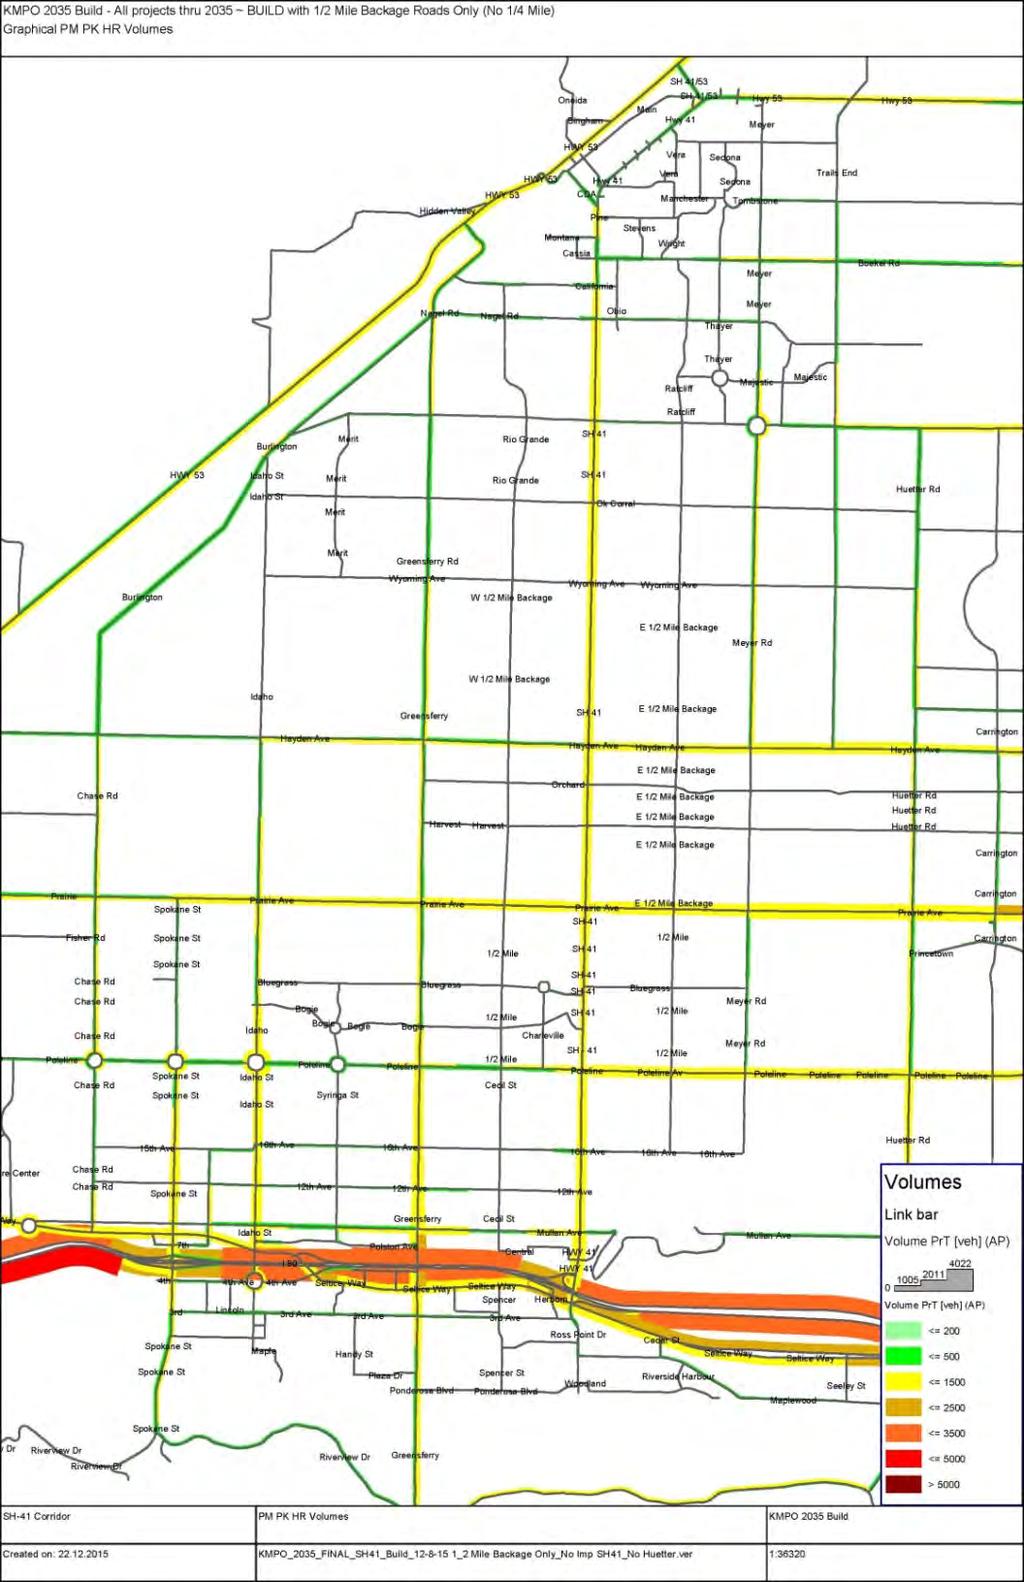 Figure 29 - Scenario #4-2035 Build - 1/2 Mile Backage Roads No Improvements to